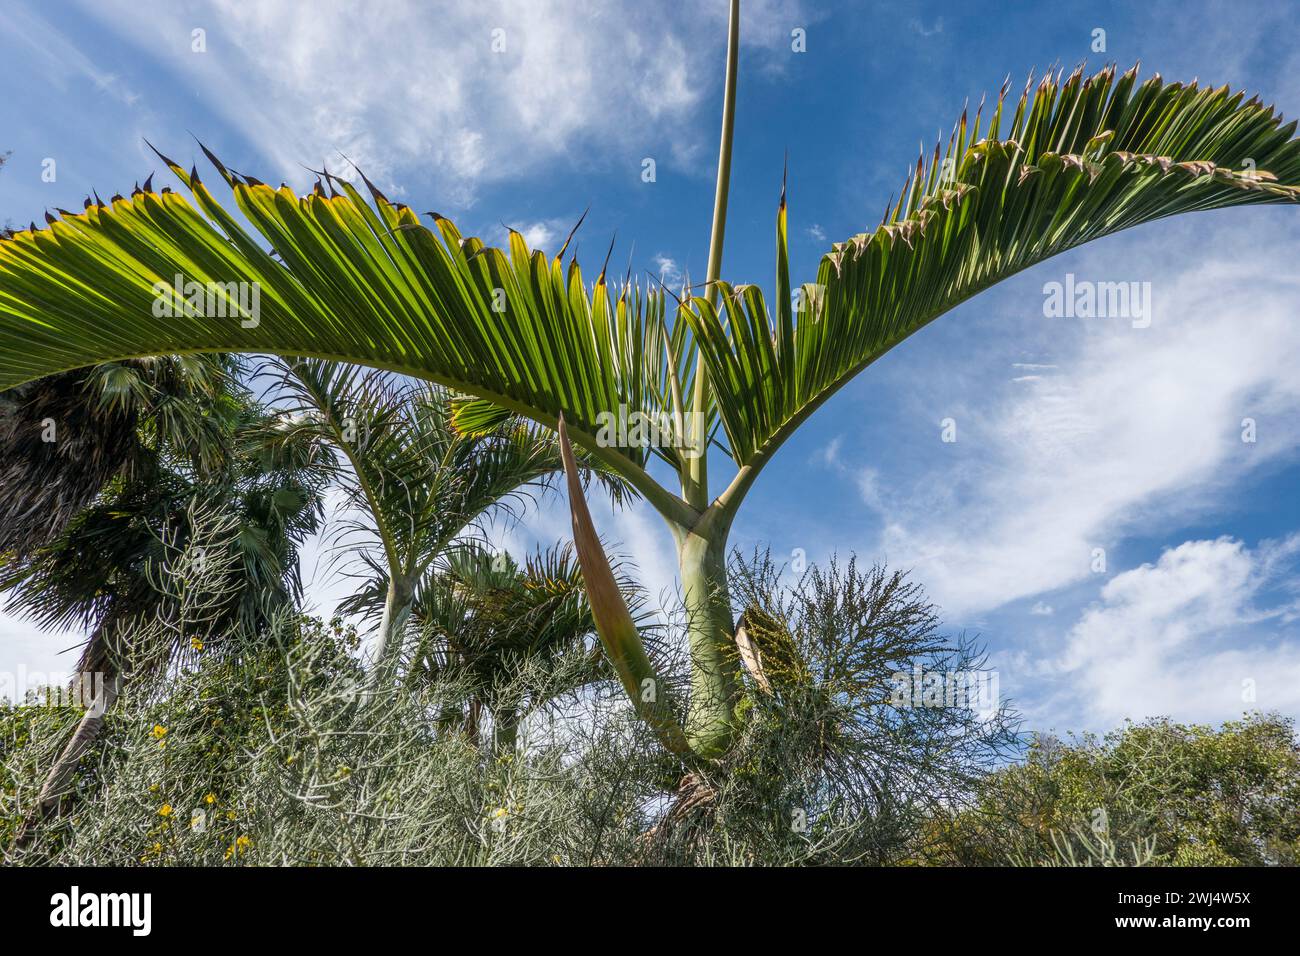 Bottle palm, barrel palm (Hyophorbe lagenicaulis, syn. Mascarena lagenicaulis) Stock Photo